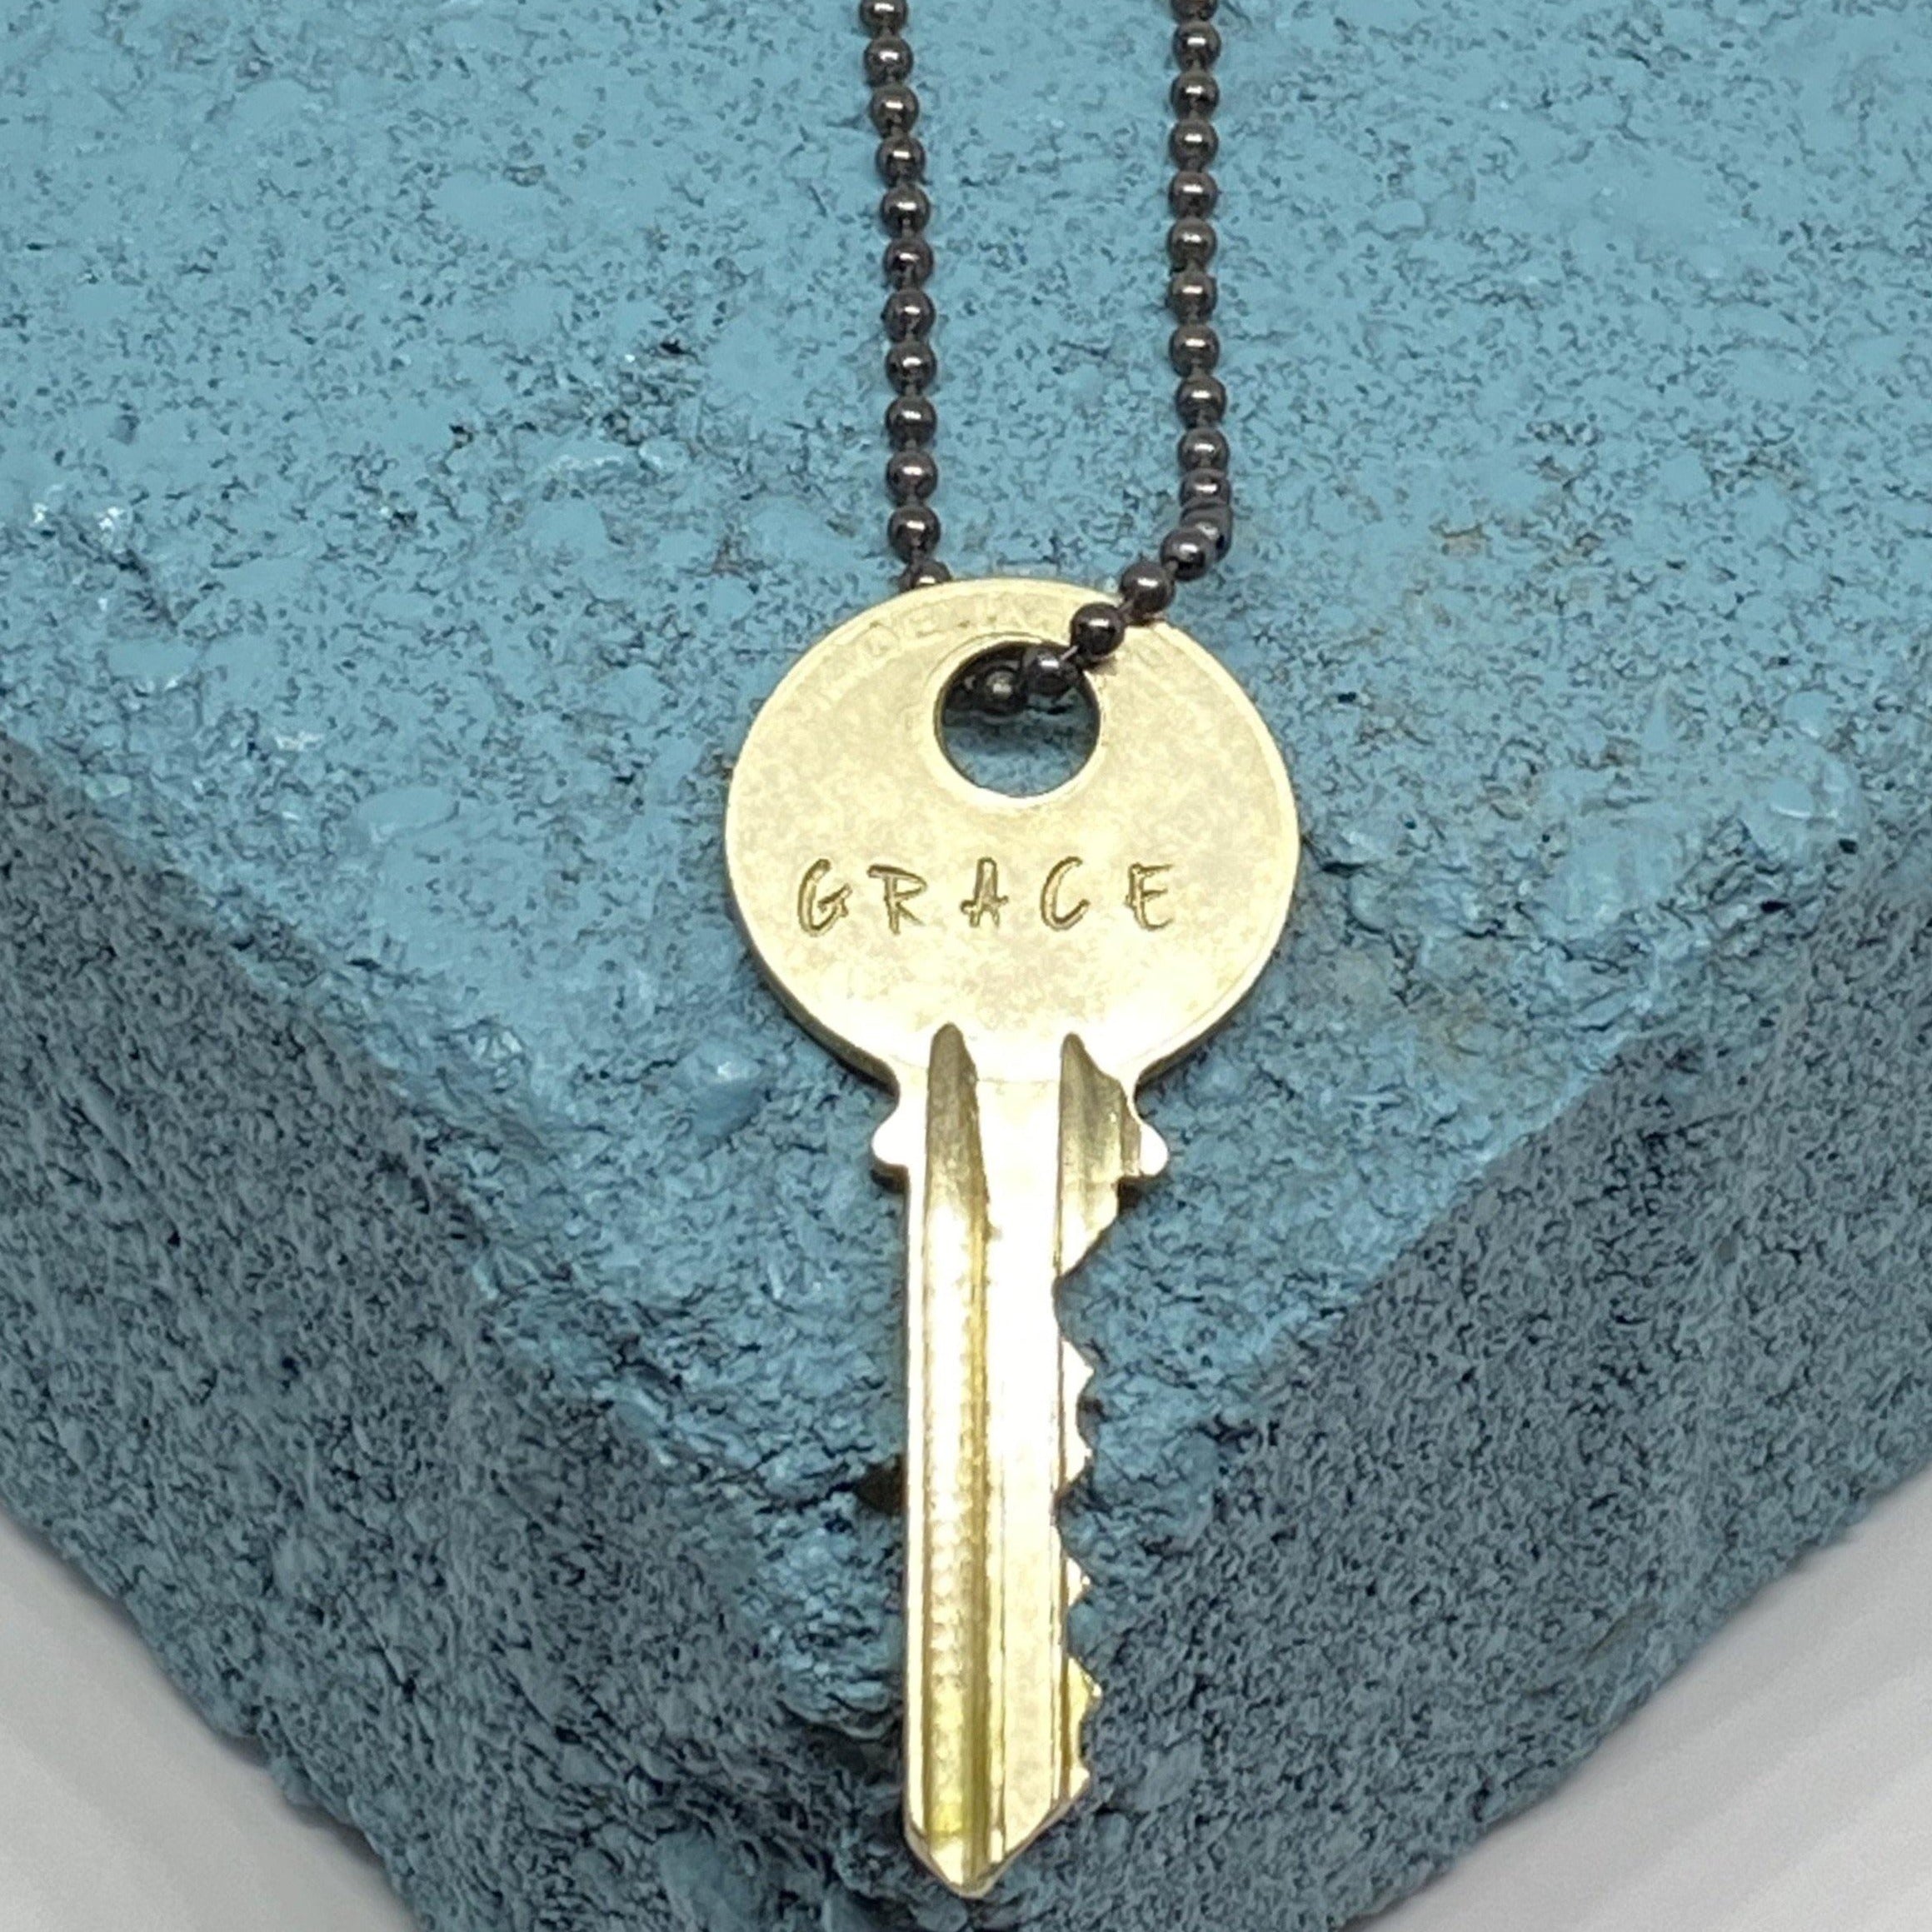 Grace Vintage Key Necklace